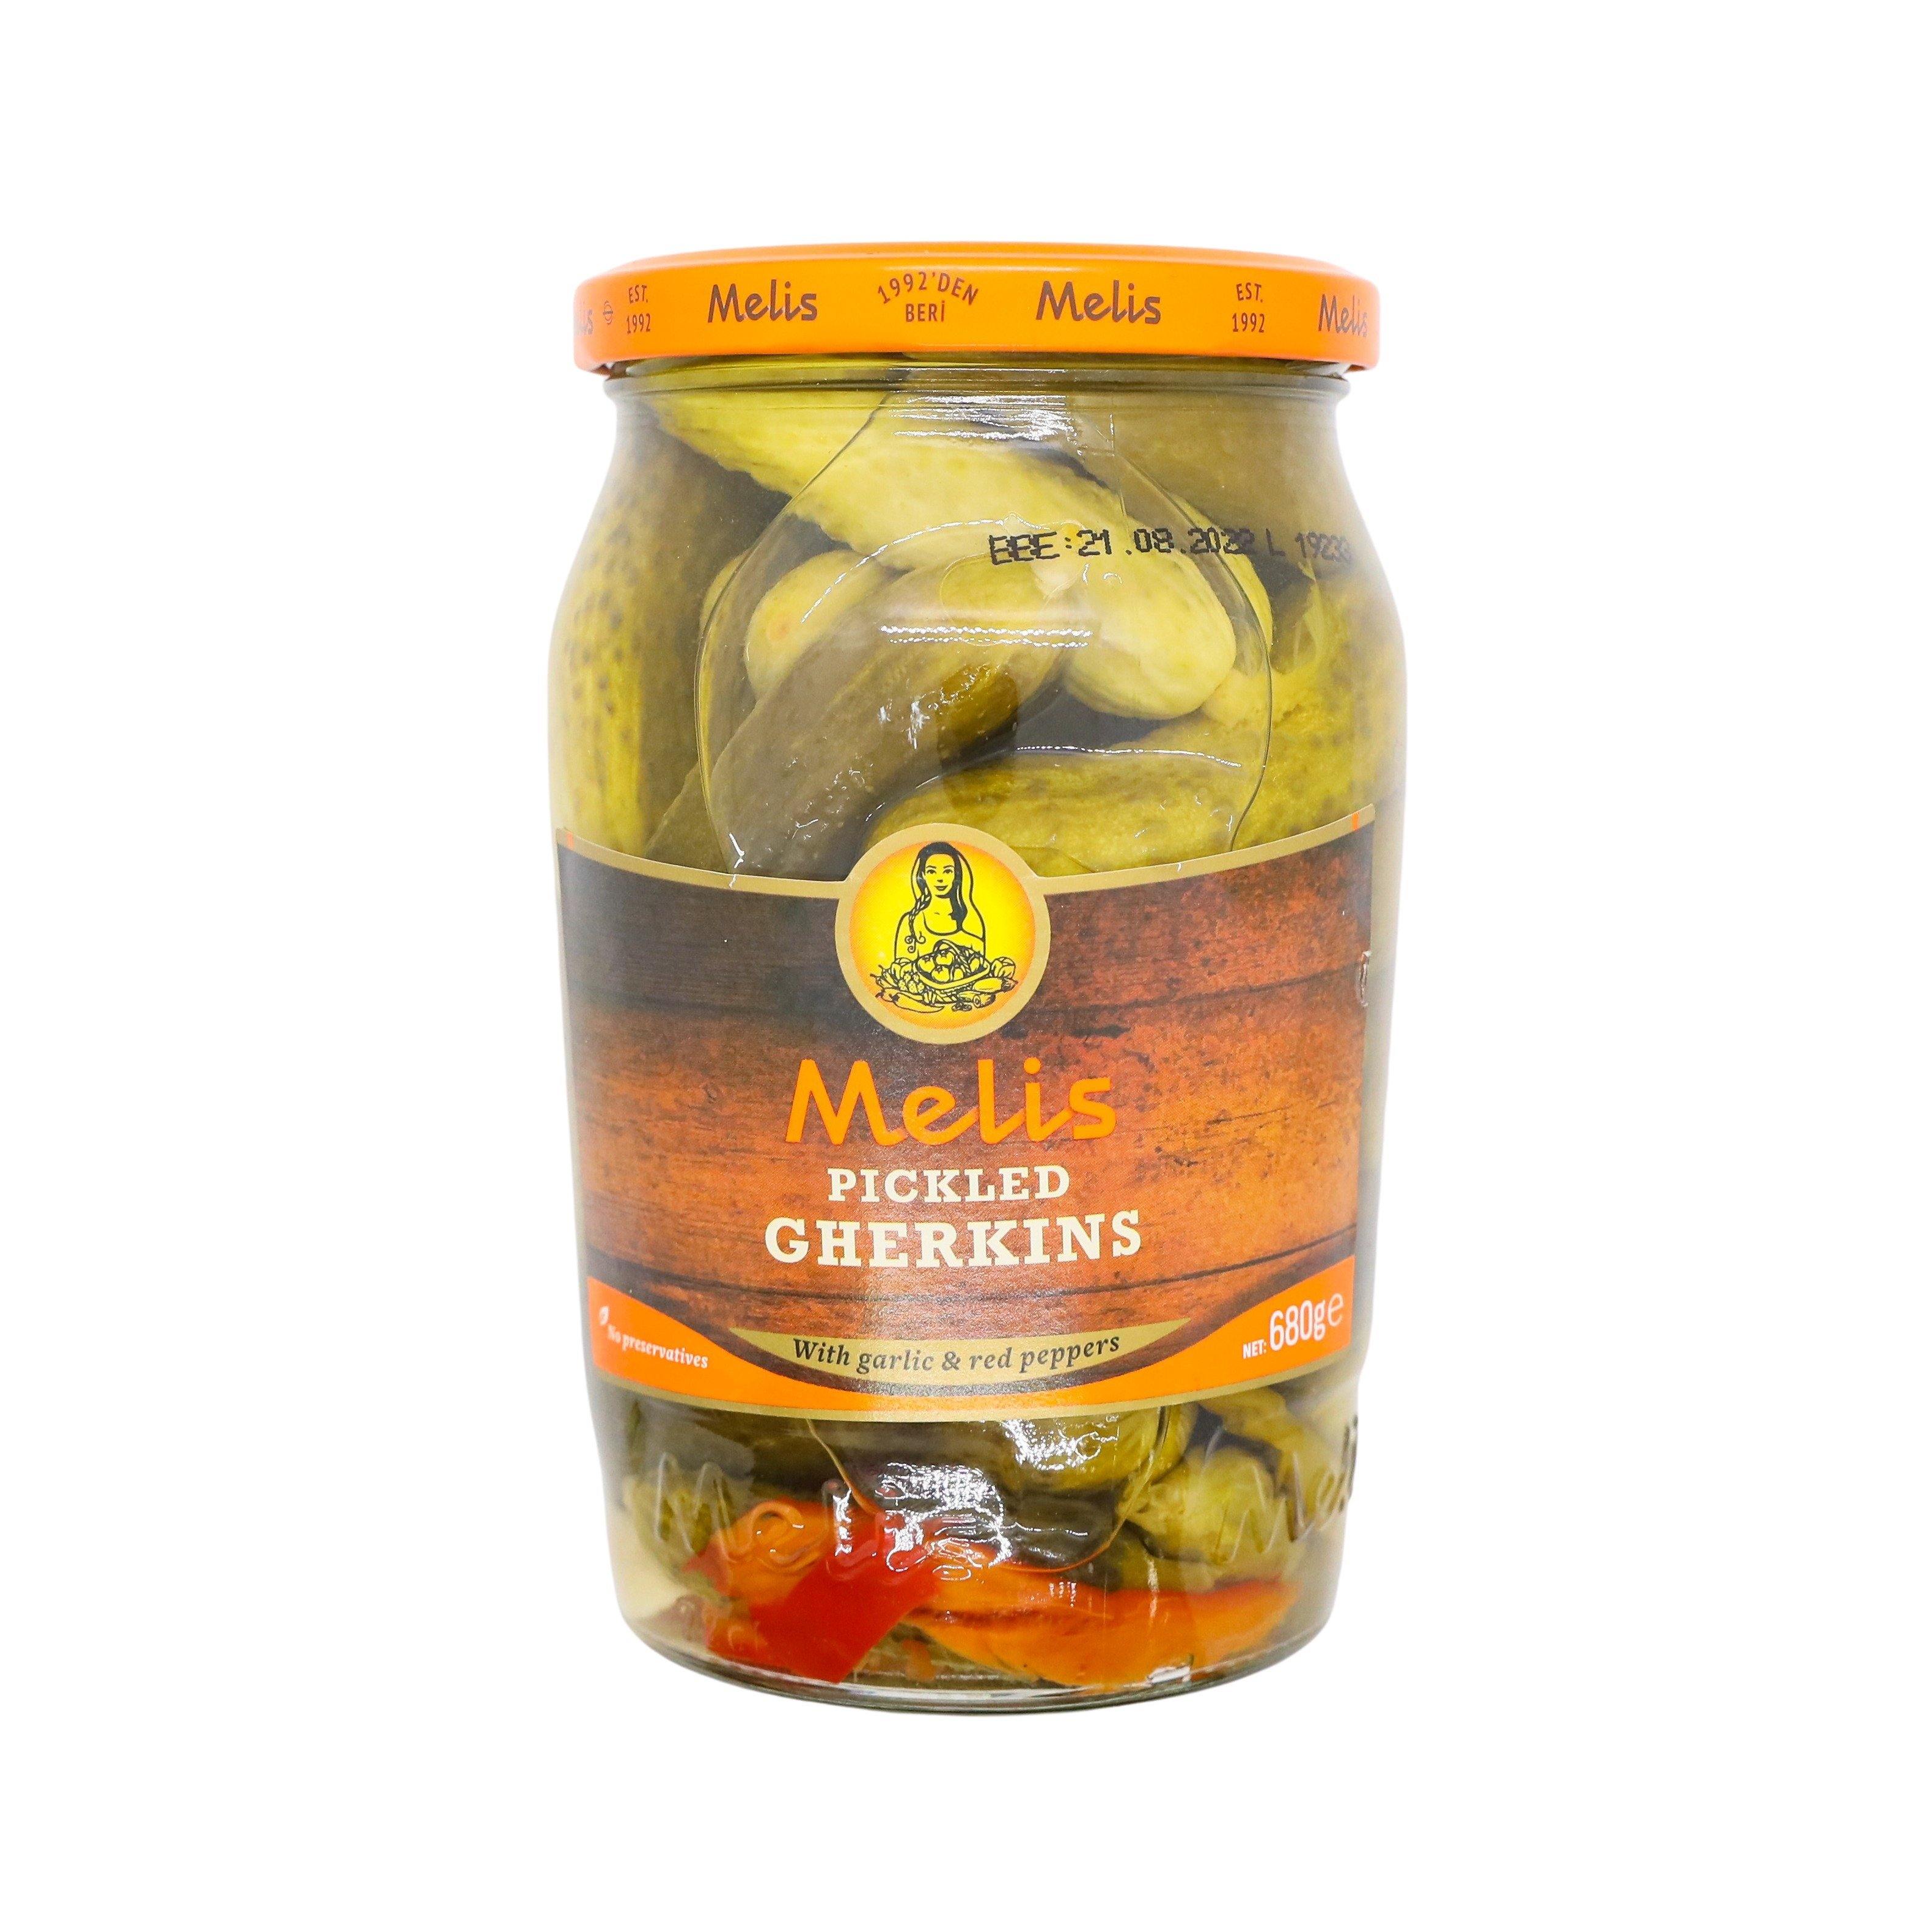 Melis pickled gherkins SaveCo Online Ltd